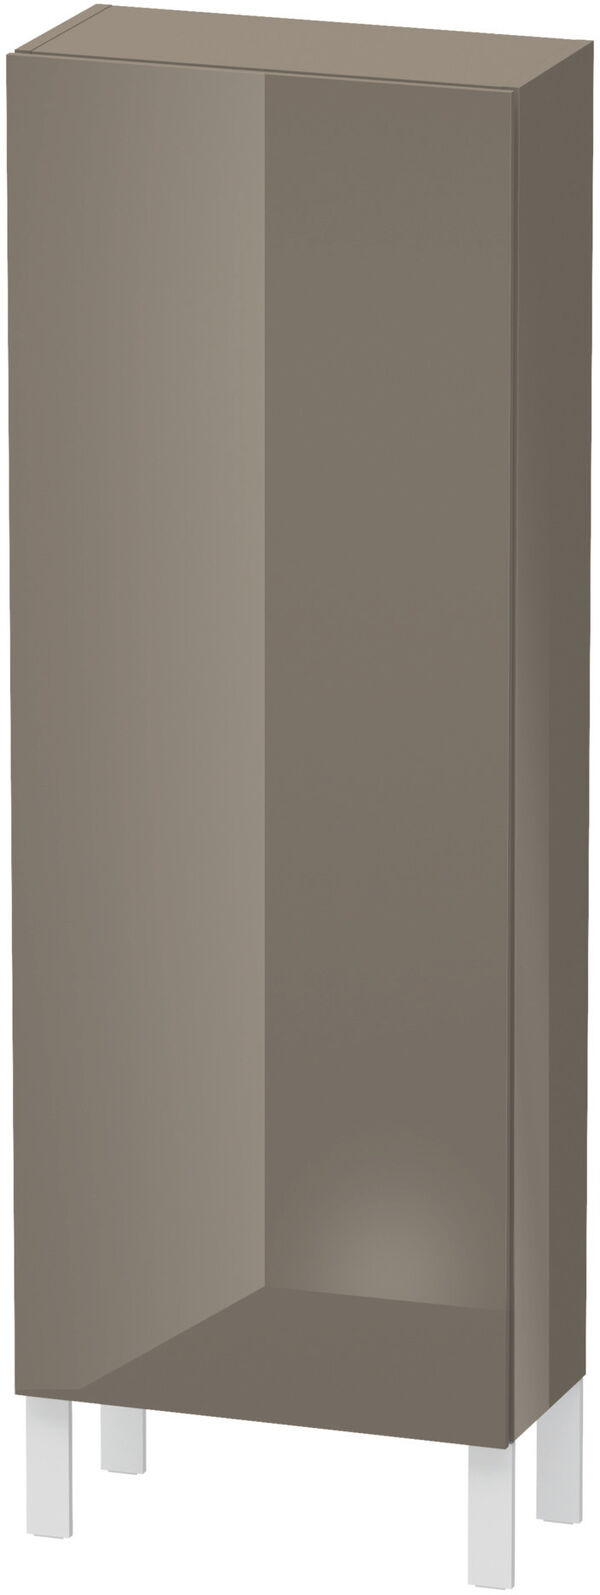 Armadietto laterale L-Cube l:50 cm, a:132 cm, p:24,3 cm 1 porta, cerniere 3 ripiani in vetro image number 0